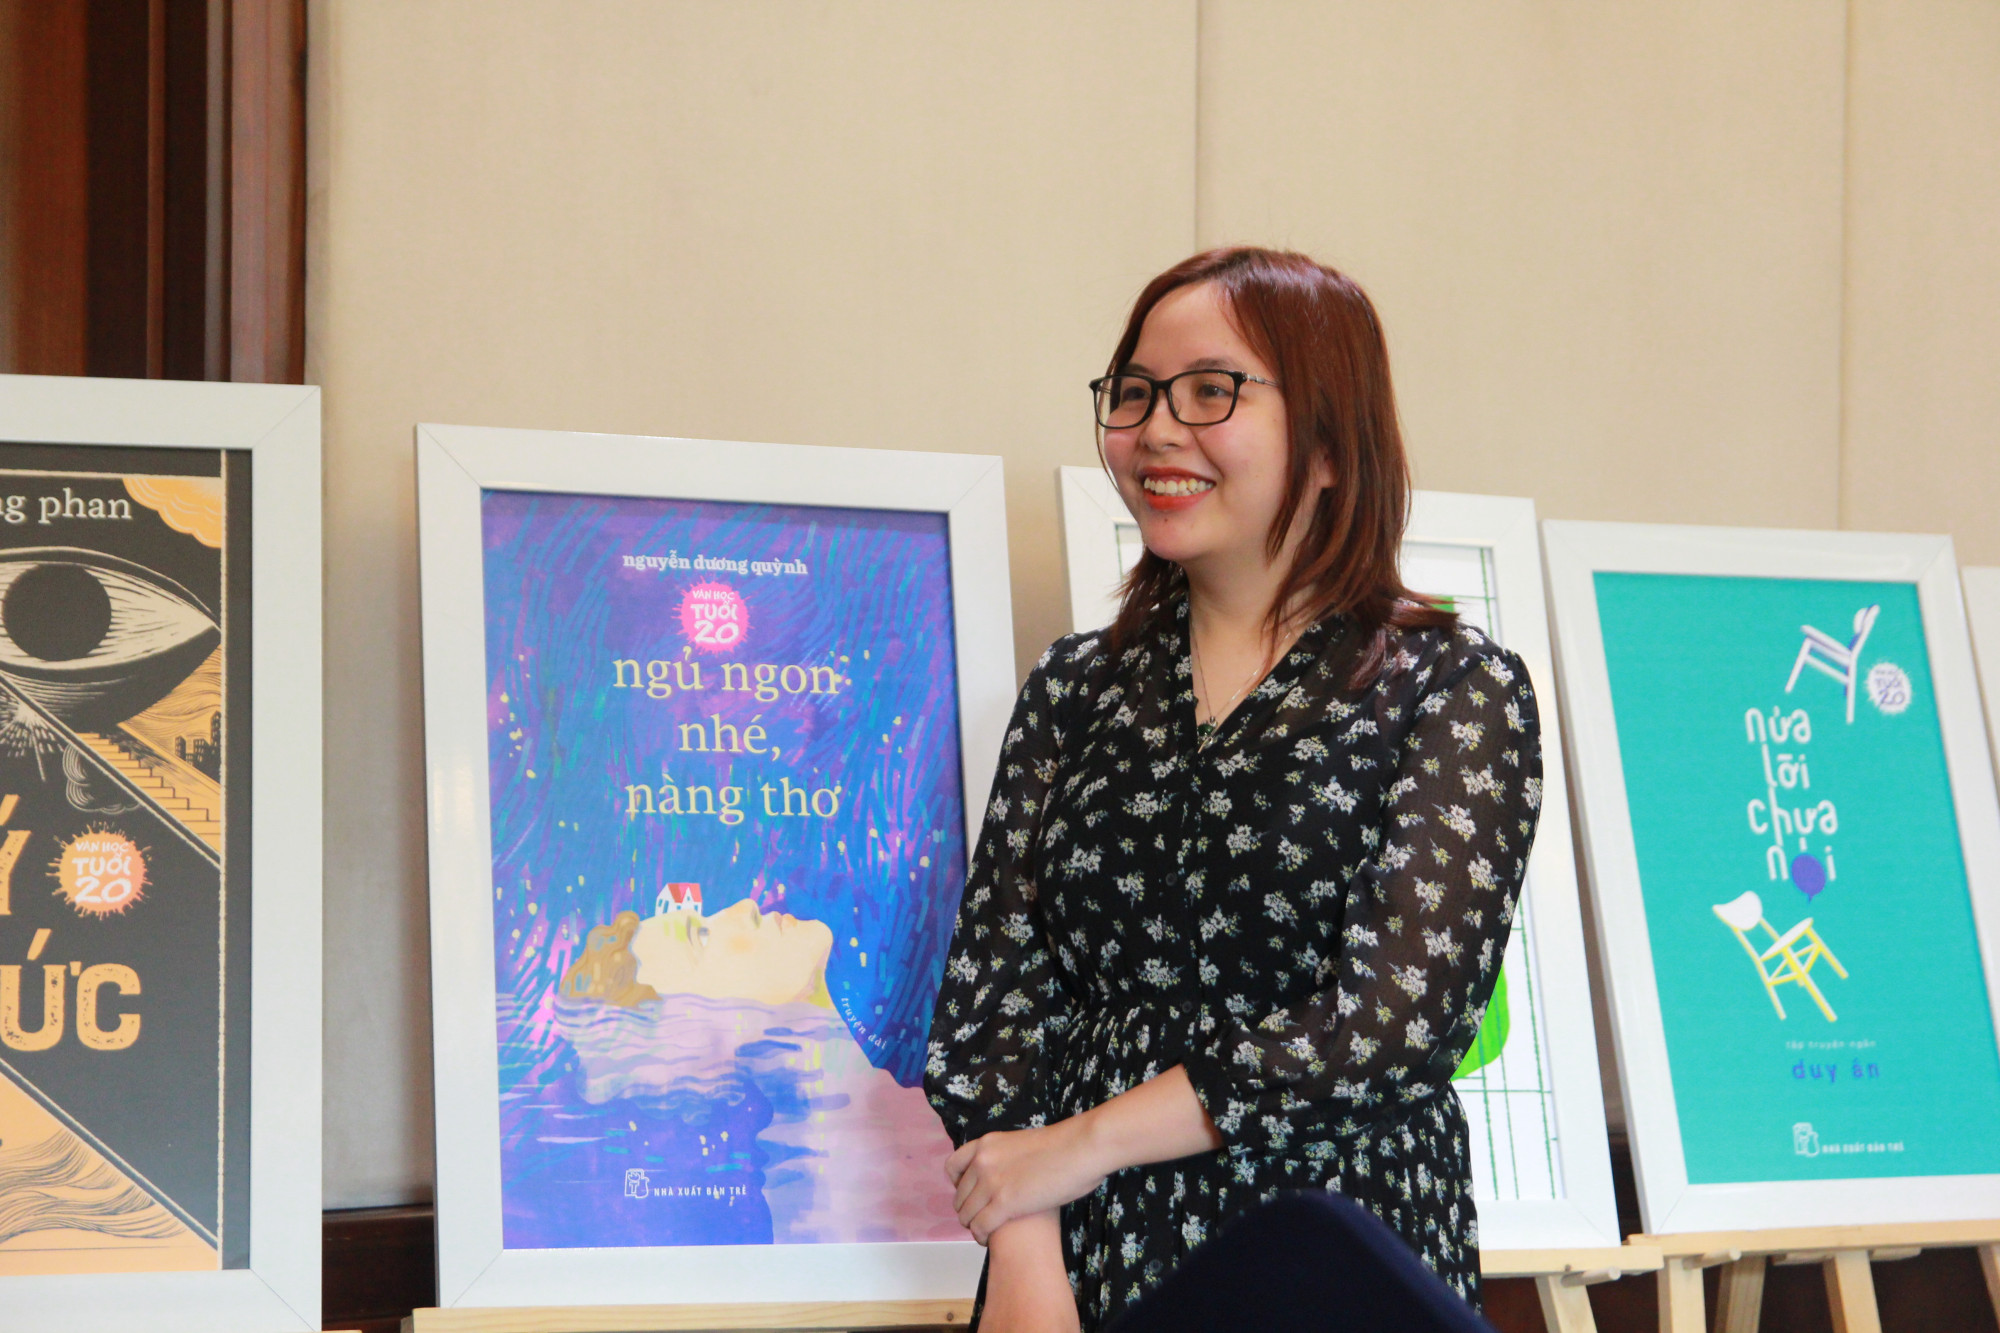 Nhà văn Nguyễn Dương Quỳnh đã có tác phẩm xuất bản từ năm 2012